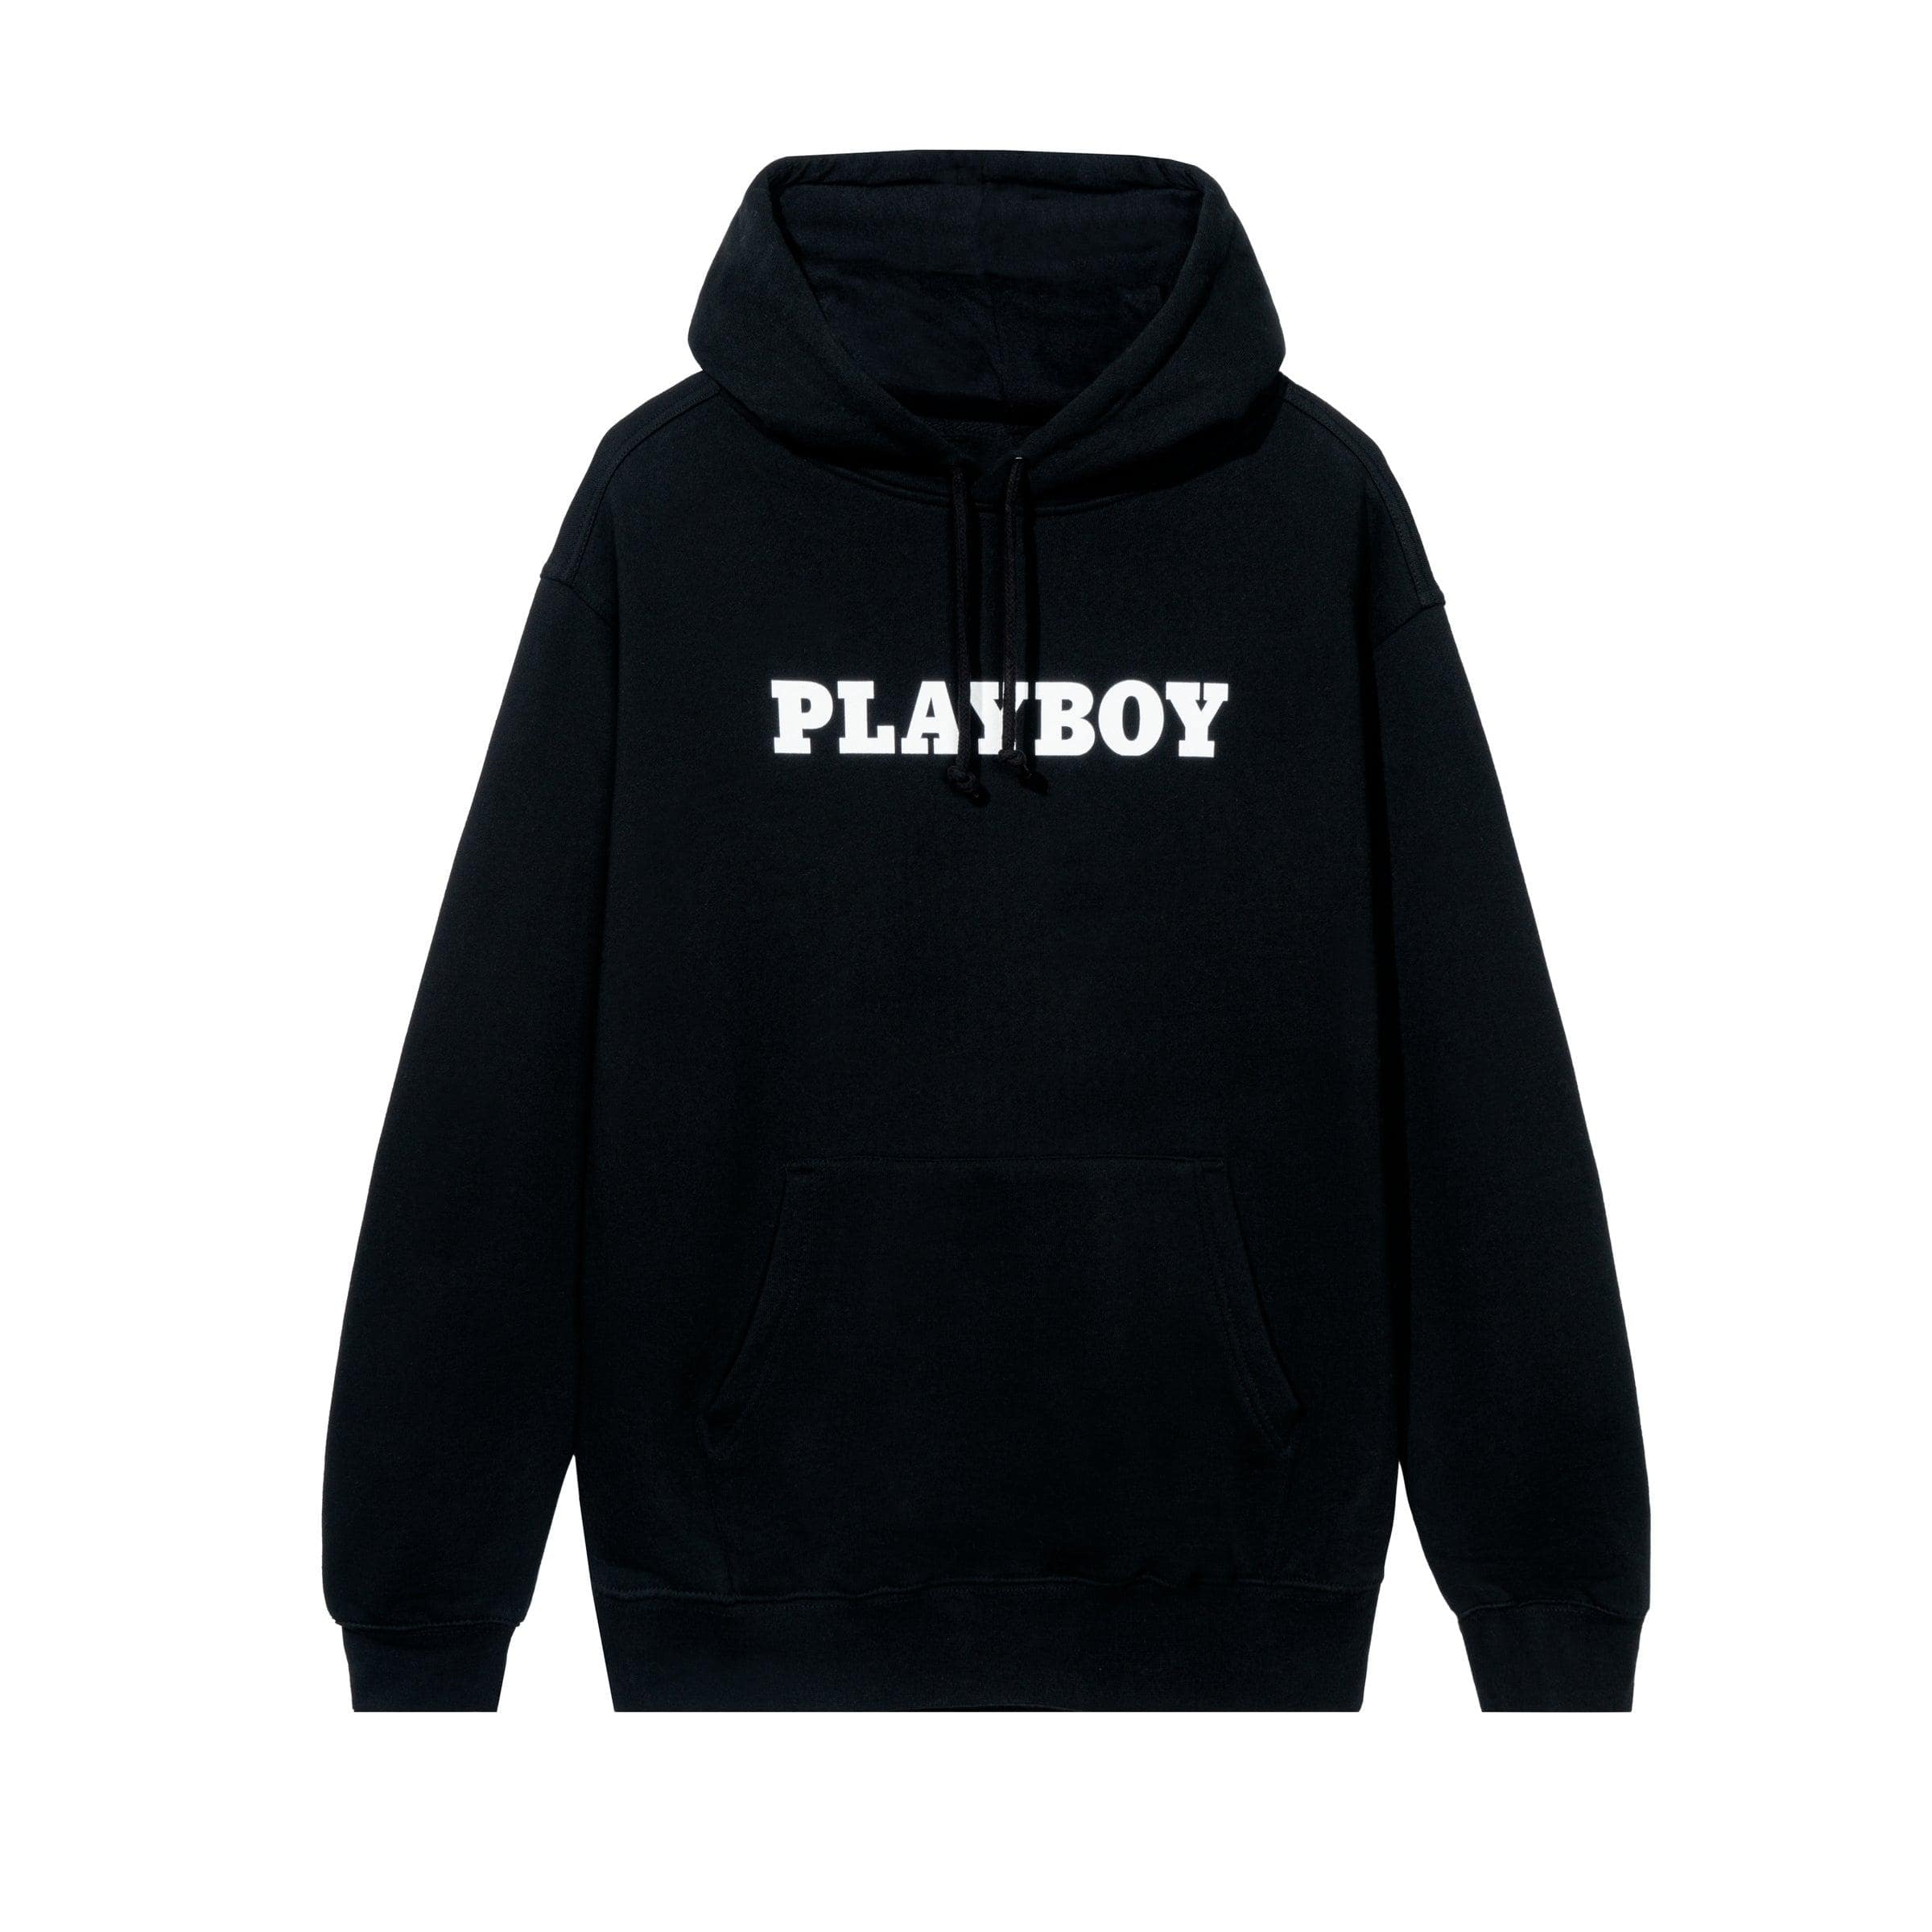 Playboy Men's Hoodie - Black